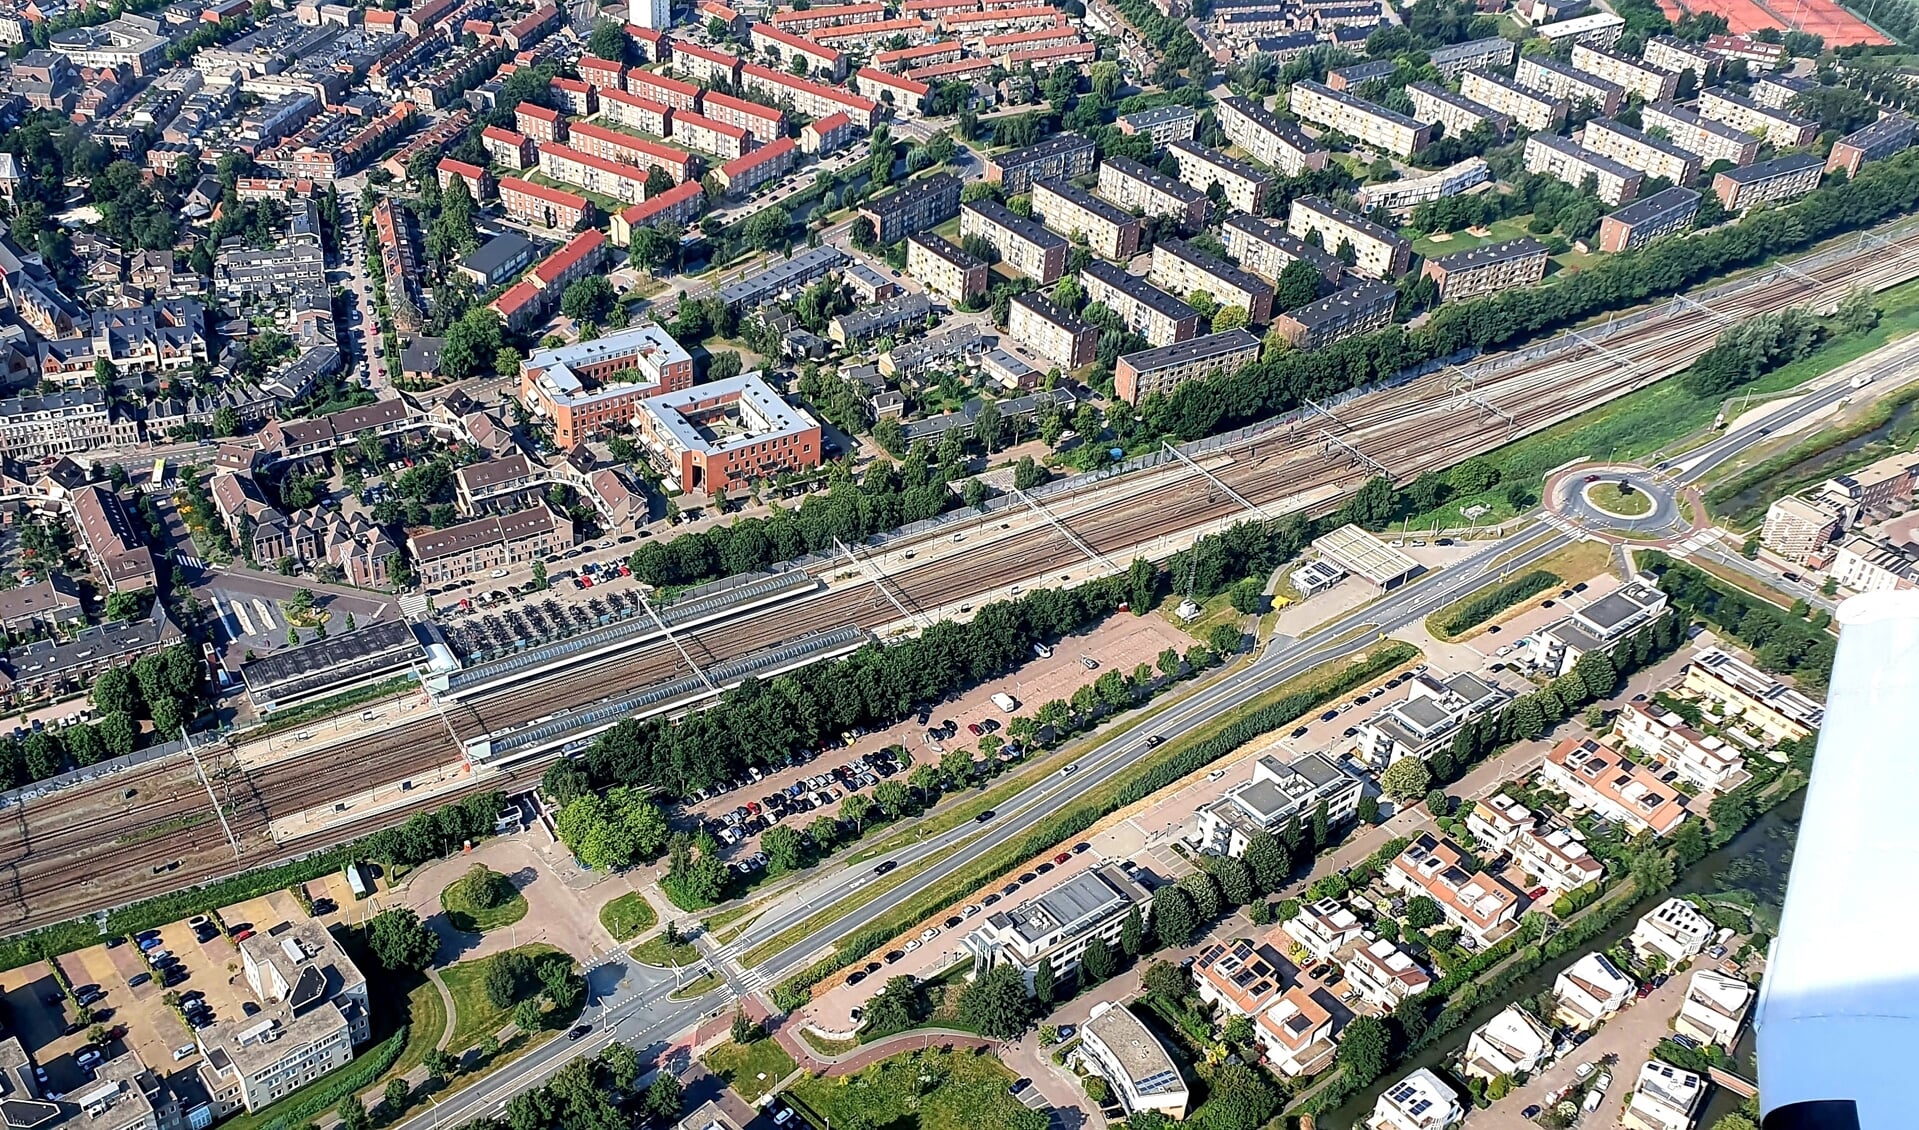 Het stationsgebied biedt volgens wethouder Vos mogelijkheden tot woningbouw. Vooral het parkeerterrein aan de Leeuwenveldseweg biedt kansen. 